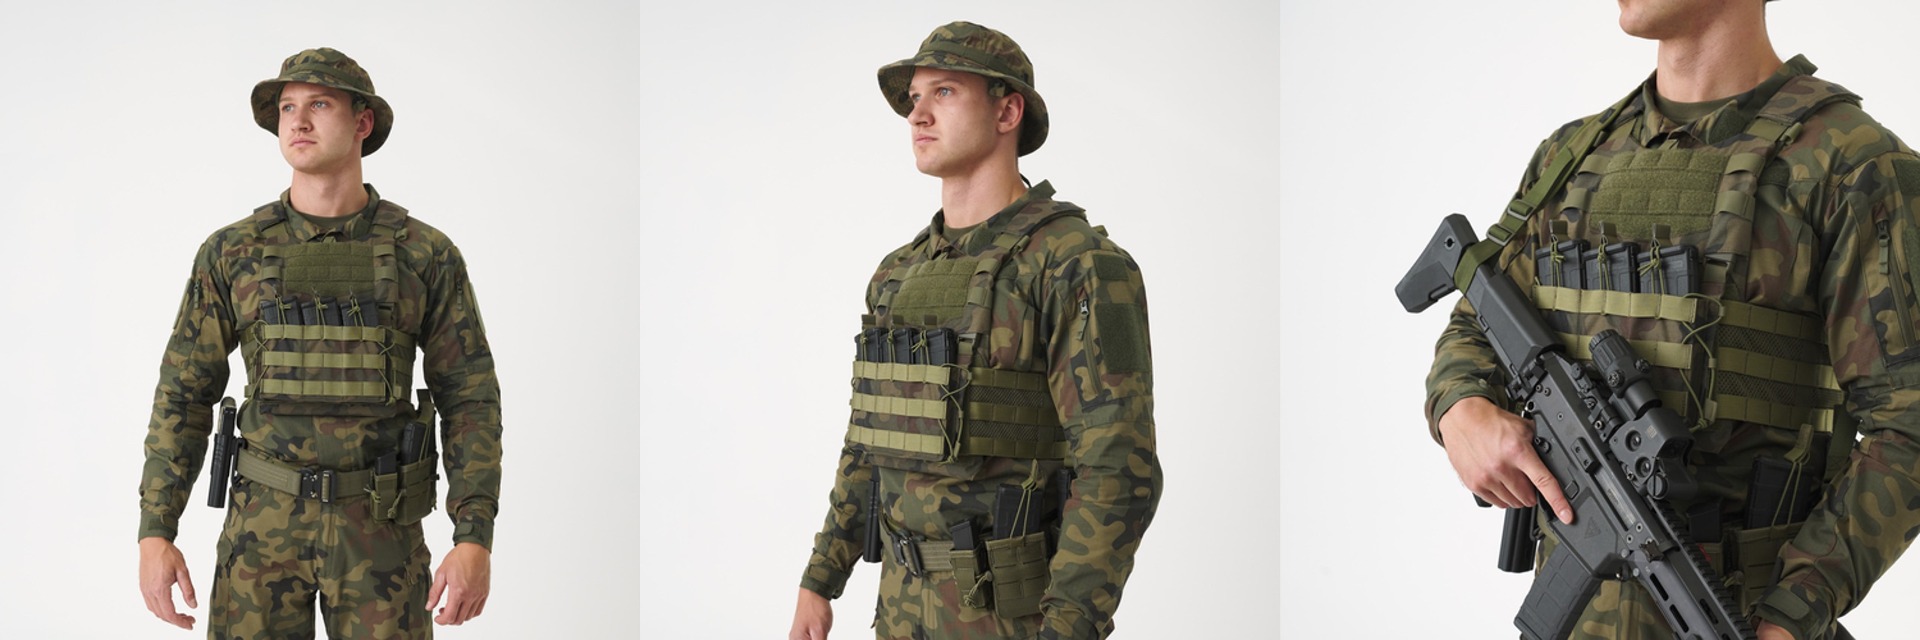 Kupite Helikon Guardian Military Set Modular Tactical Vest v Multicamu za balistične plošče velikosti L (340 x 260 mm) na opremljen.si. Vrhunska vojaška oprema za maksimalno varnost.